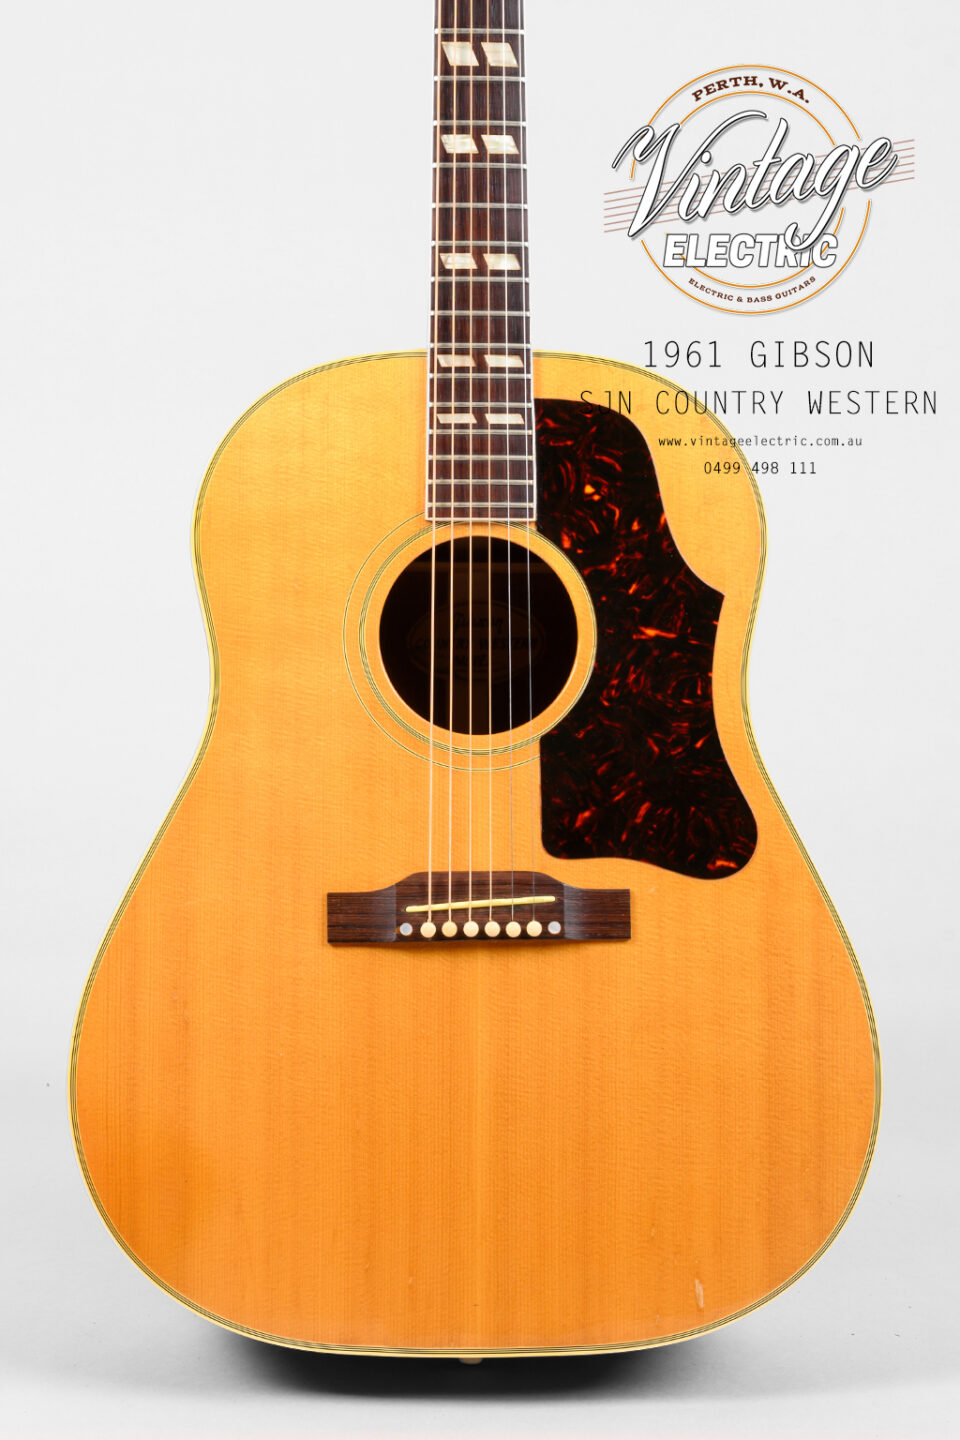 1961 Gibson SJN CW Body